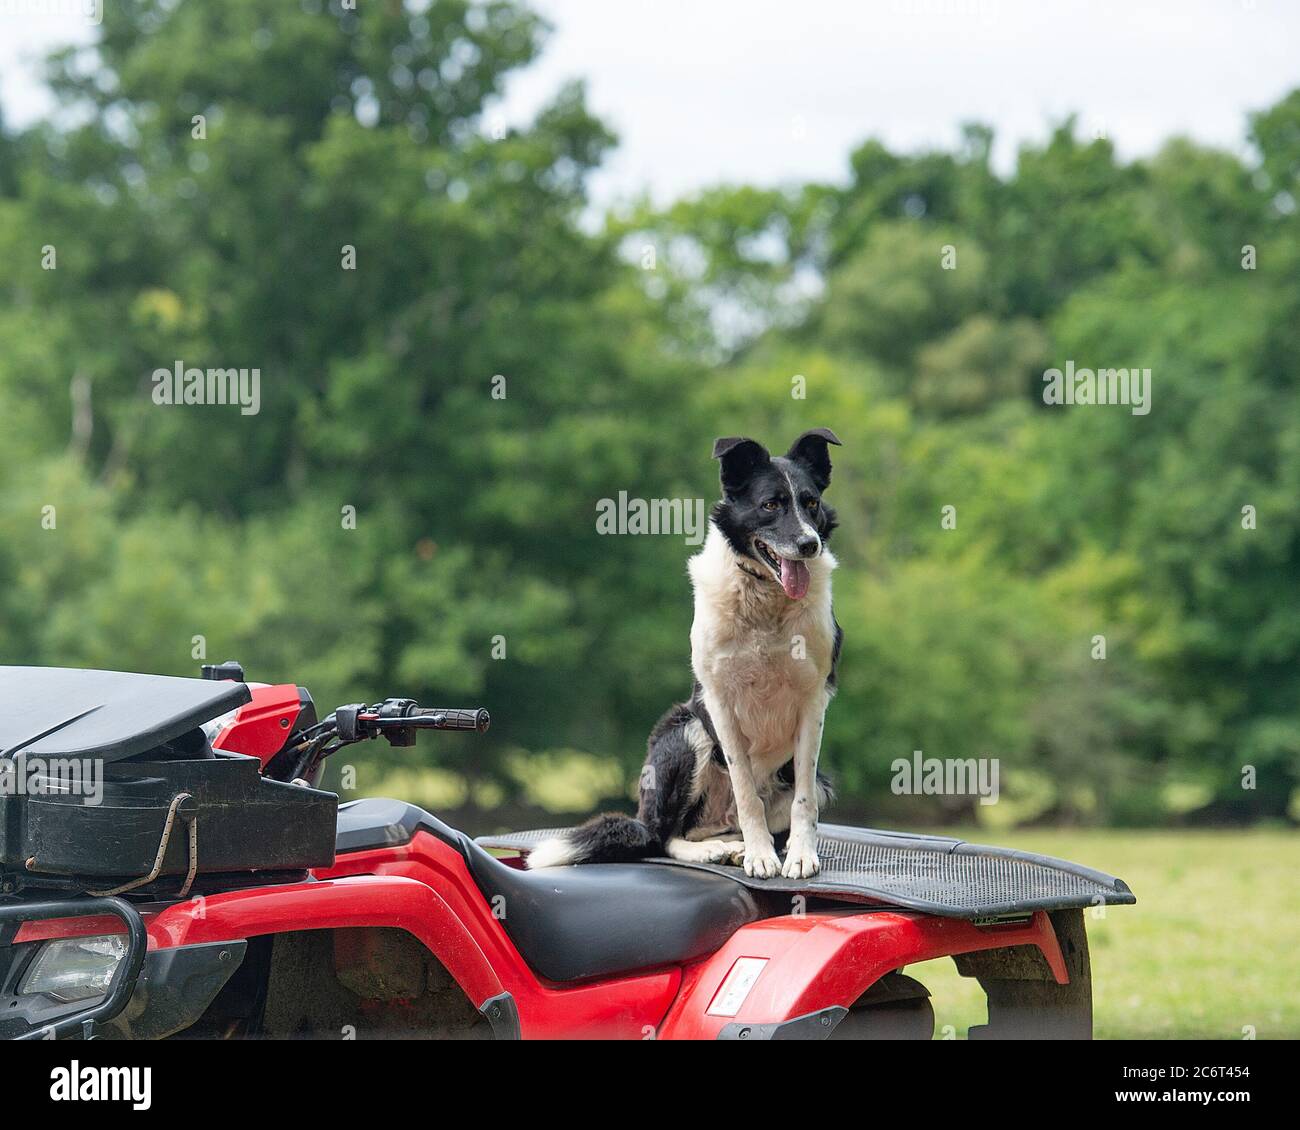 sheepdog bordo collie su una quadbike Foto Stock